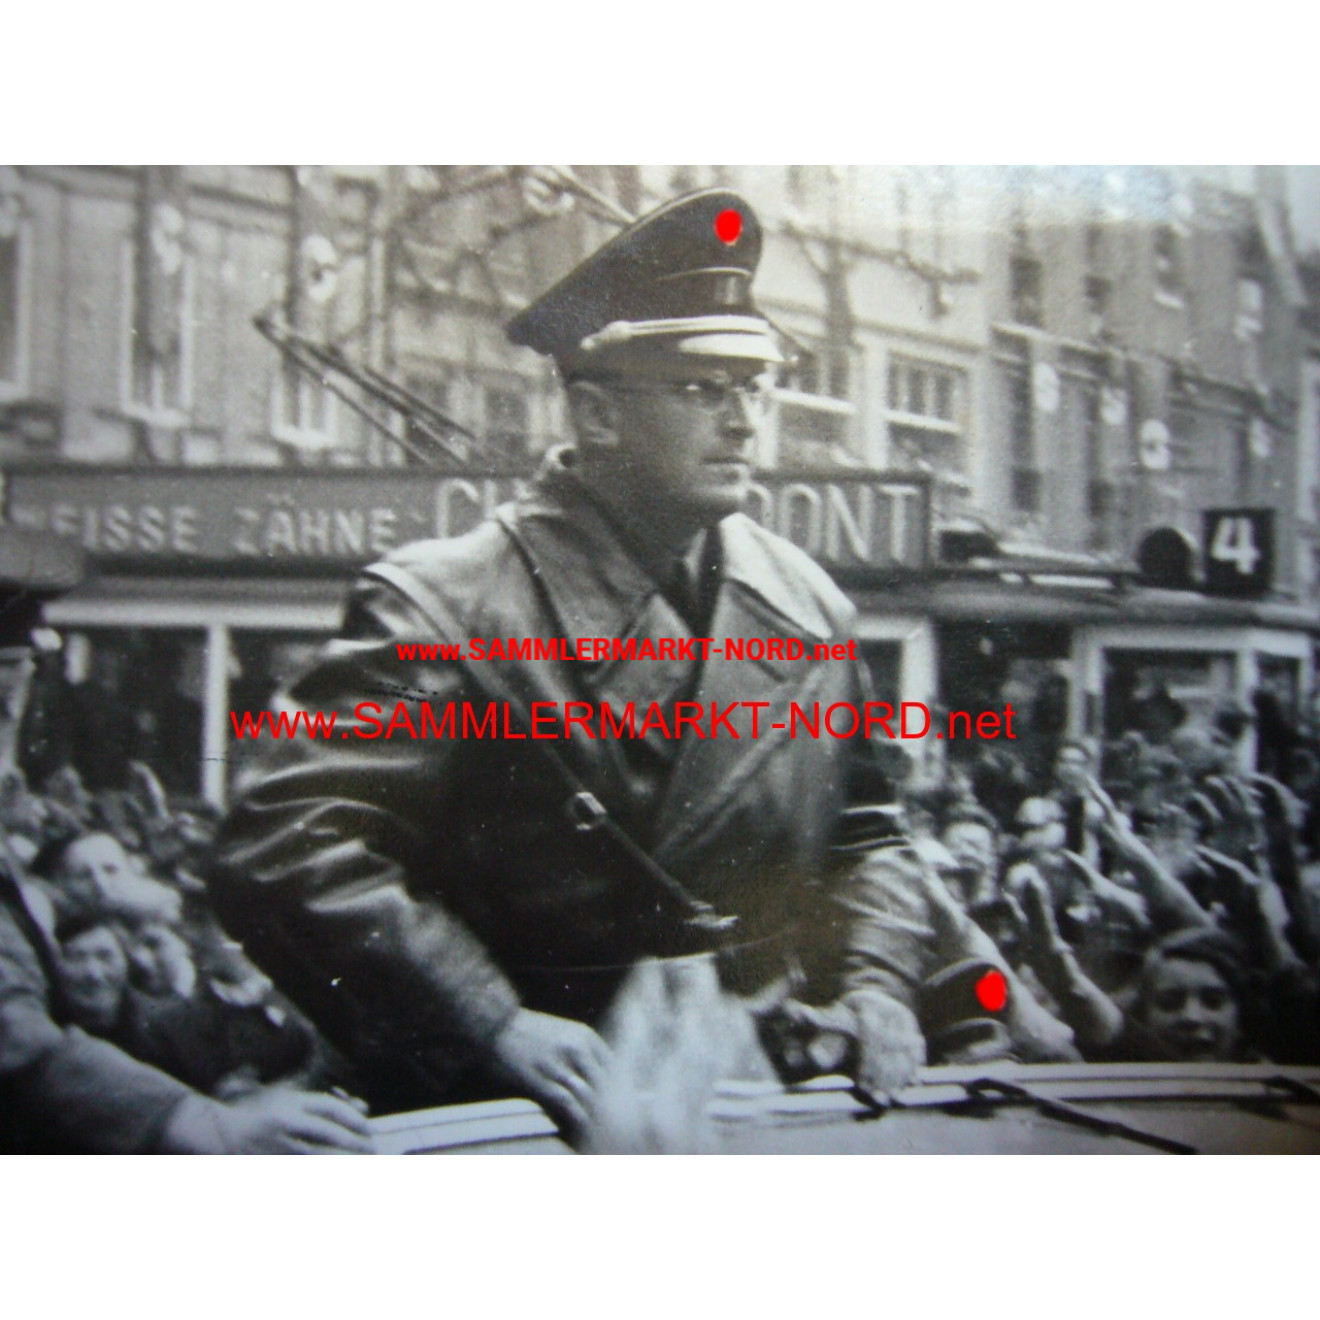 NSDAP politician and SS Obergruppenführer KONRAD HENLEIN